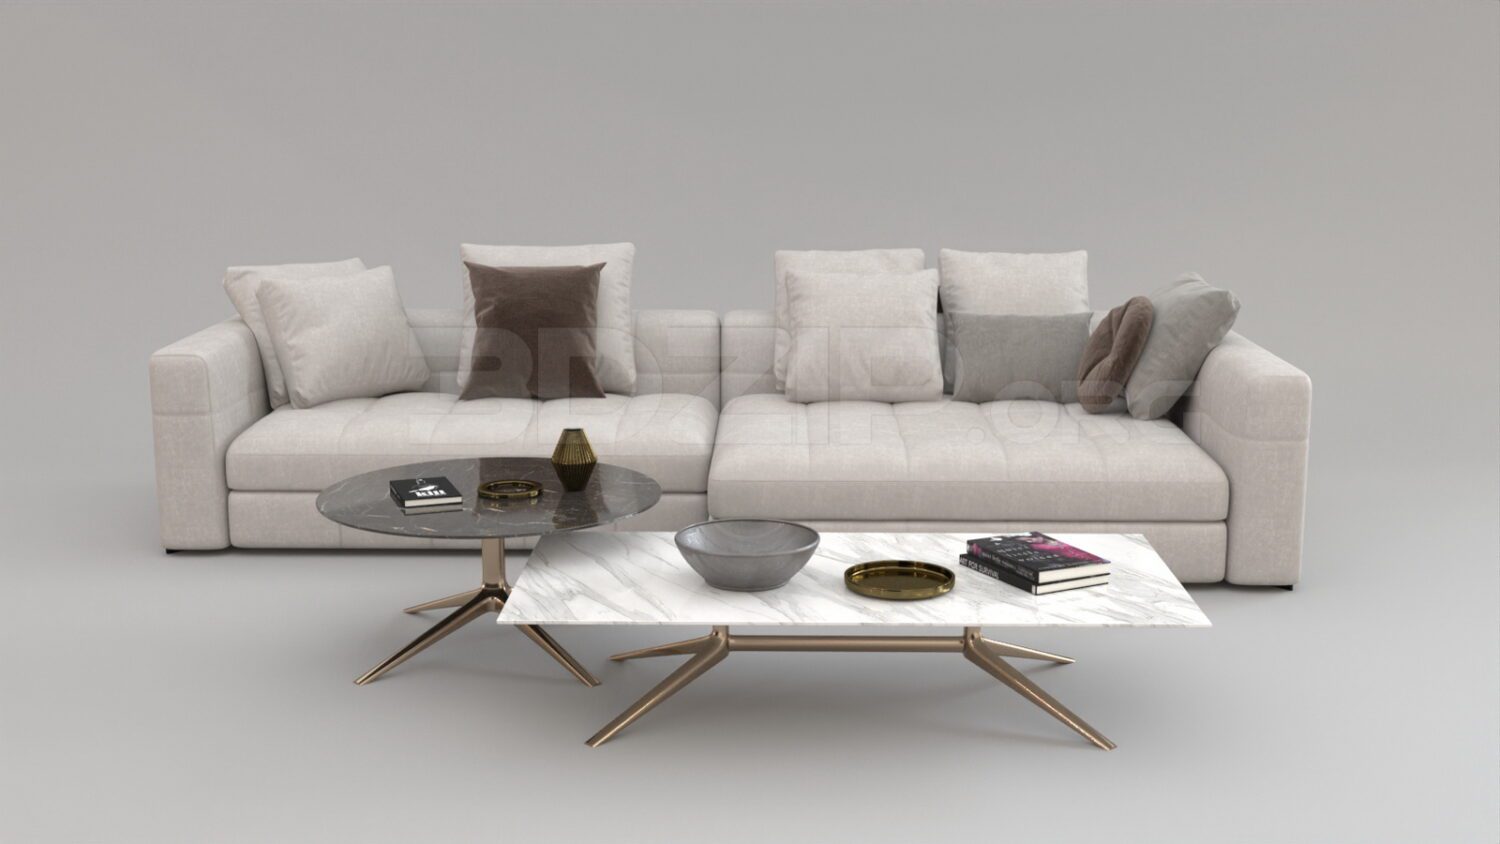 4573. Free 3D Sofa Model Download